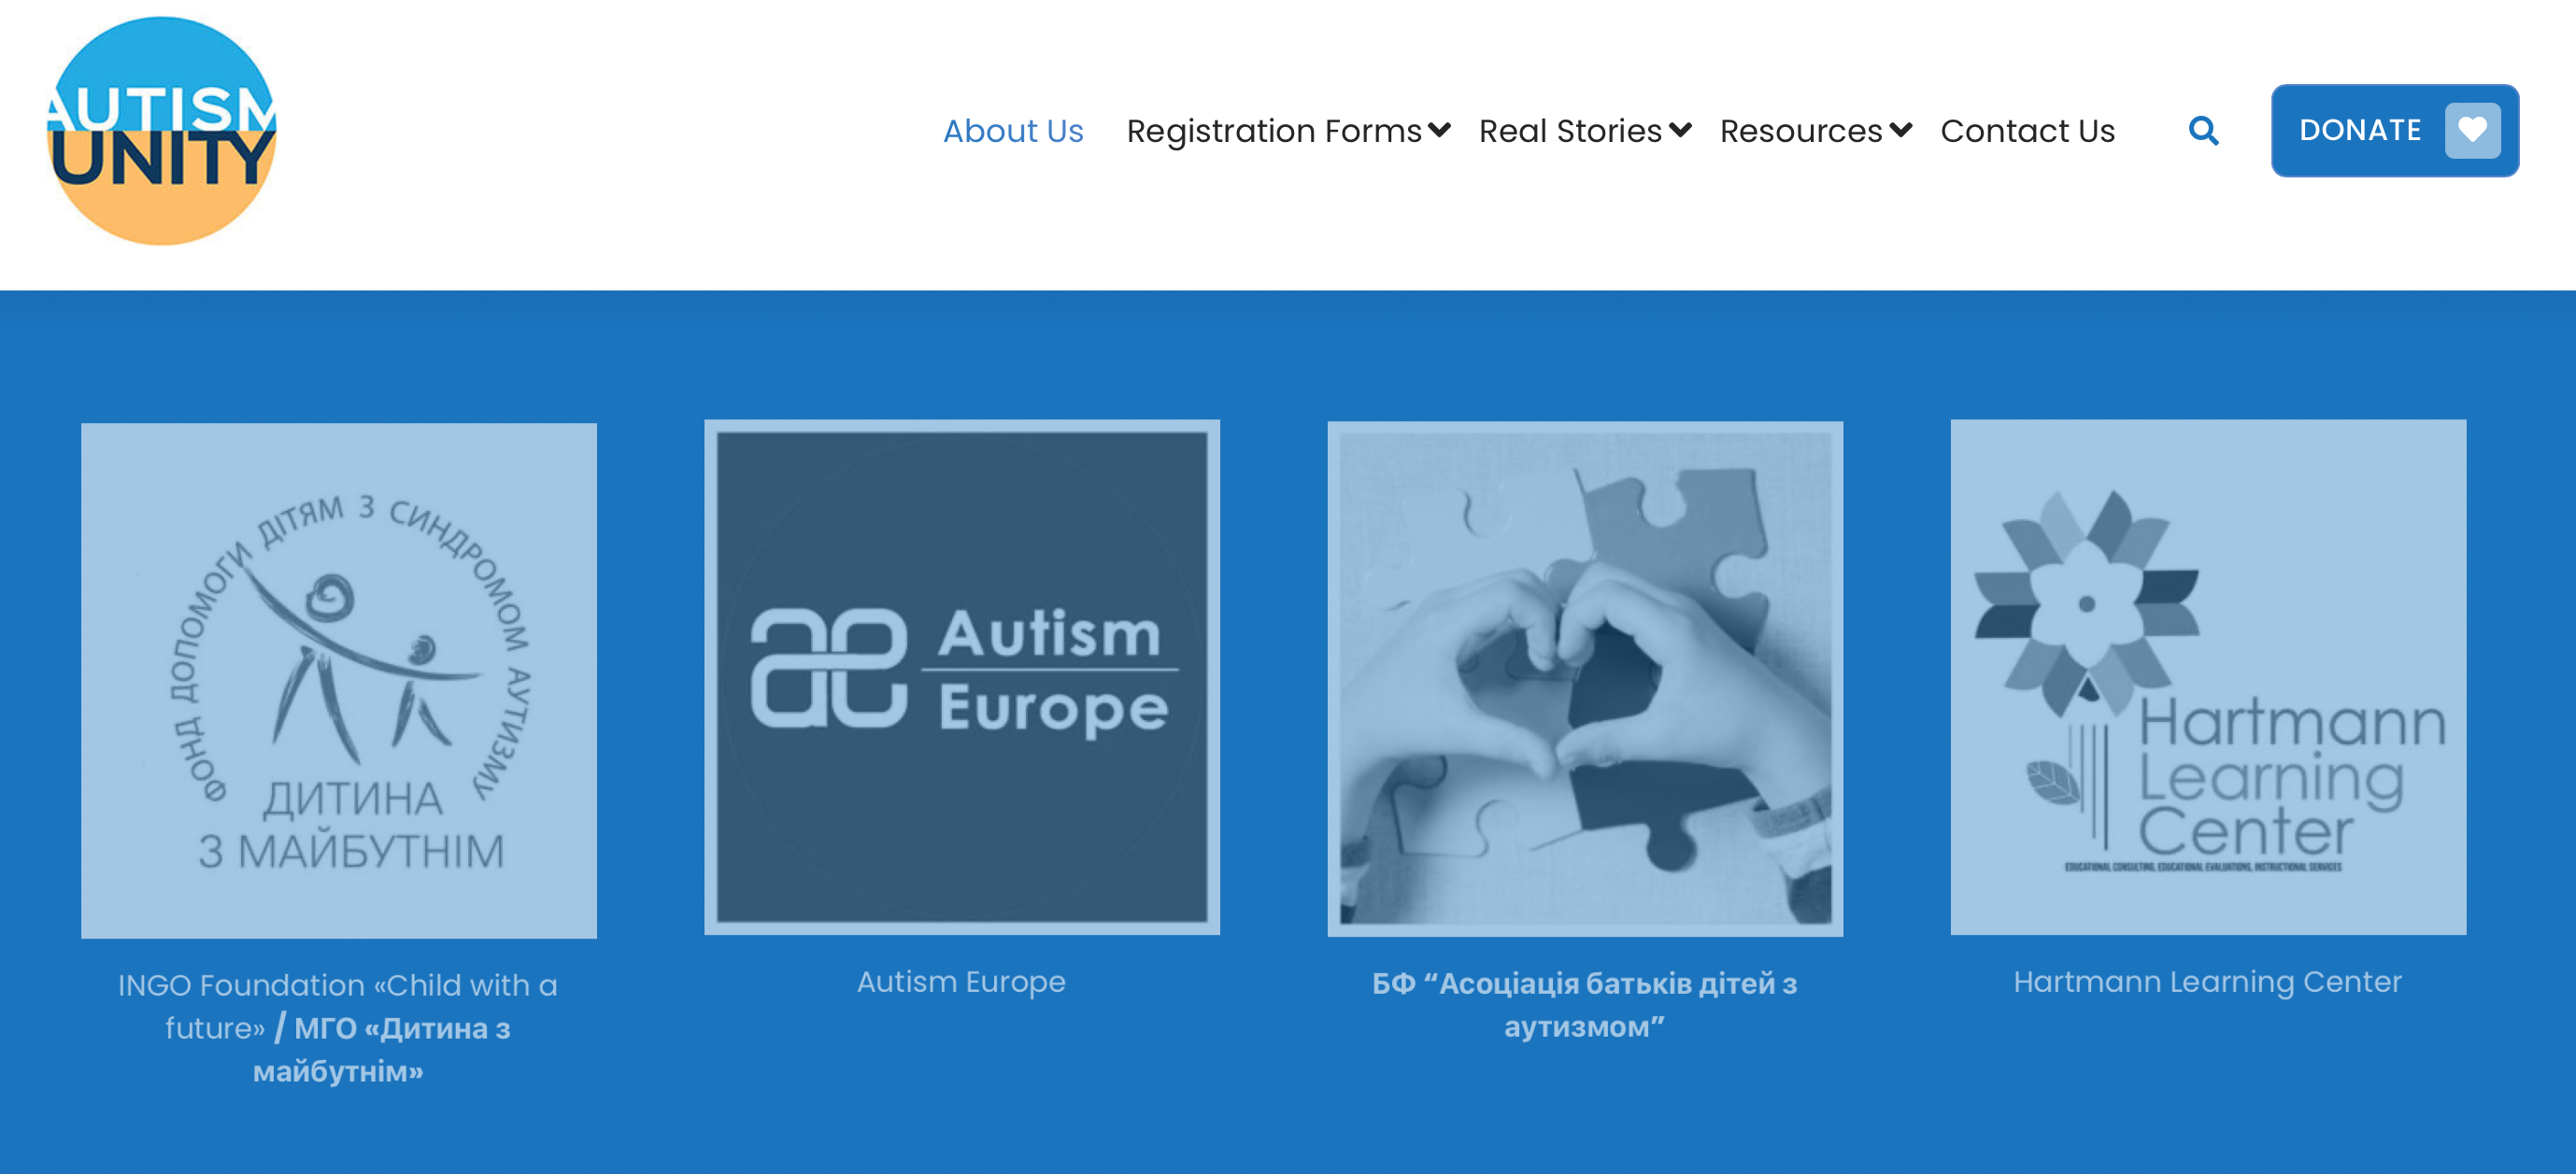 Над проектом Autism Unity работает вся Европа: официальное обращение к «Аутизм Европа»